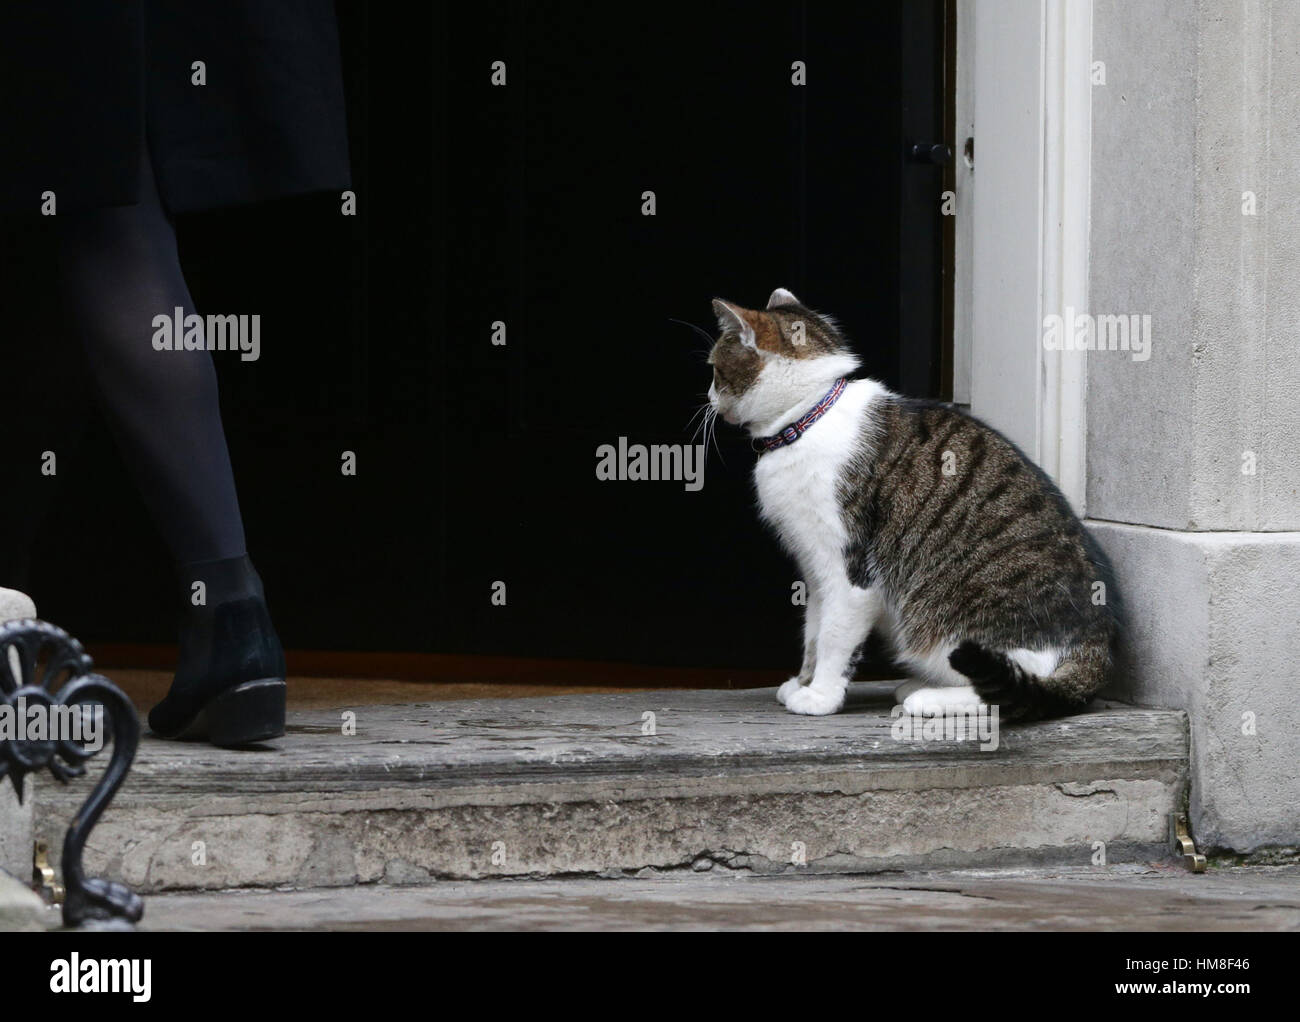 Larry die Katze vor den Toren von Nr. 10, als Minister kommen für eine Kabinettssitzung in der Downing Street, London. PRESSEVERBAND Foto. Bild Datum: Dienstag, 31. Januar 2017. Bildnachweis sollte lauten: Yui Mok/PA Wire Stockfoto